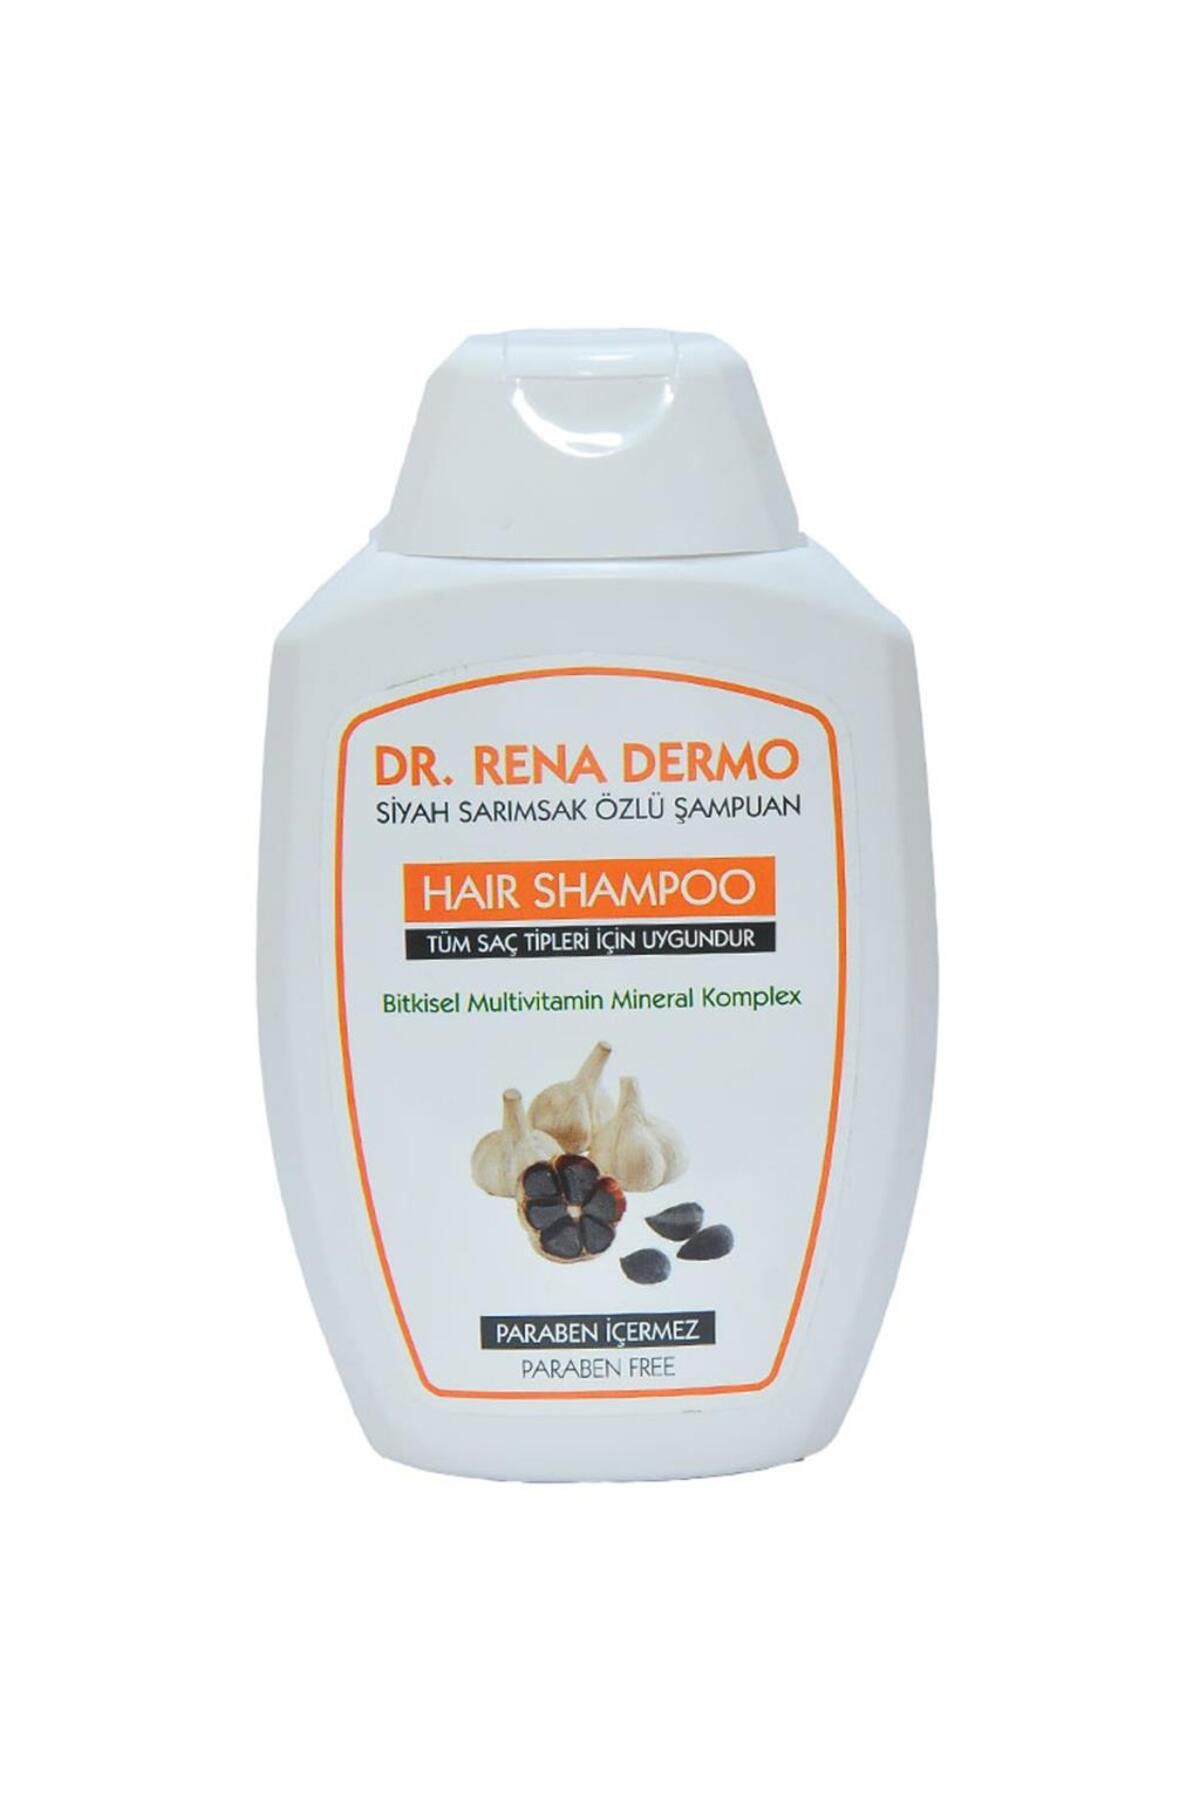 Dr. Rena Dermo Dr.rena Dermo Siyah Sarımsak Özlü Şampuan